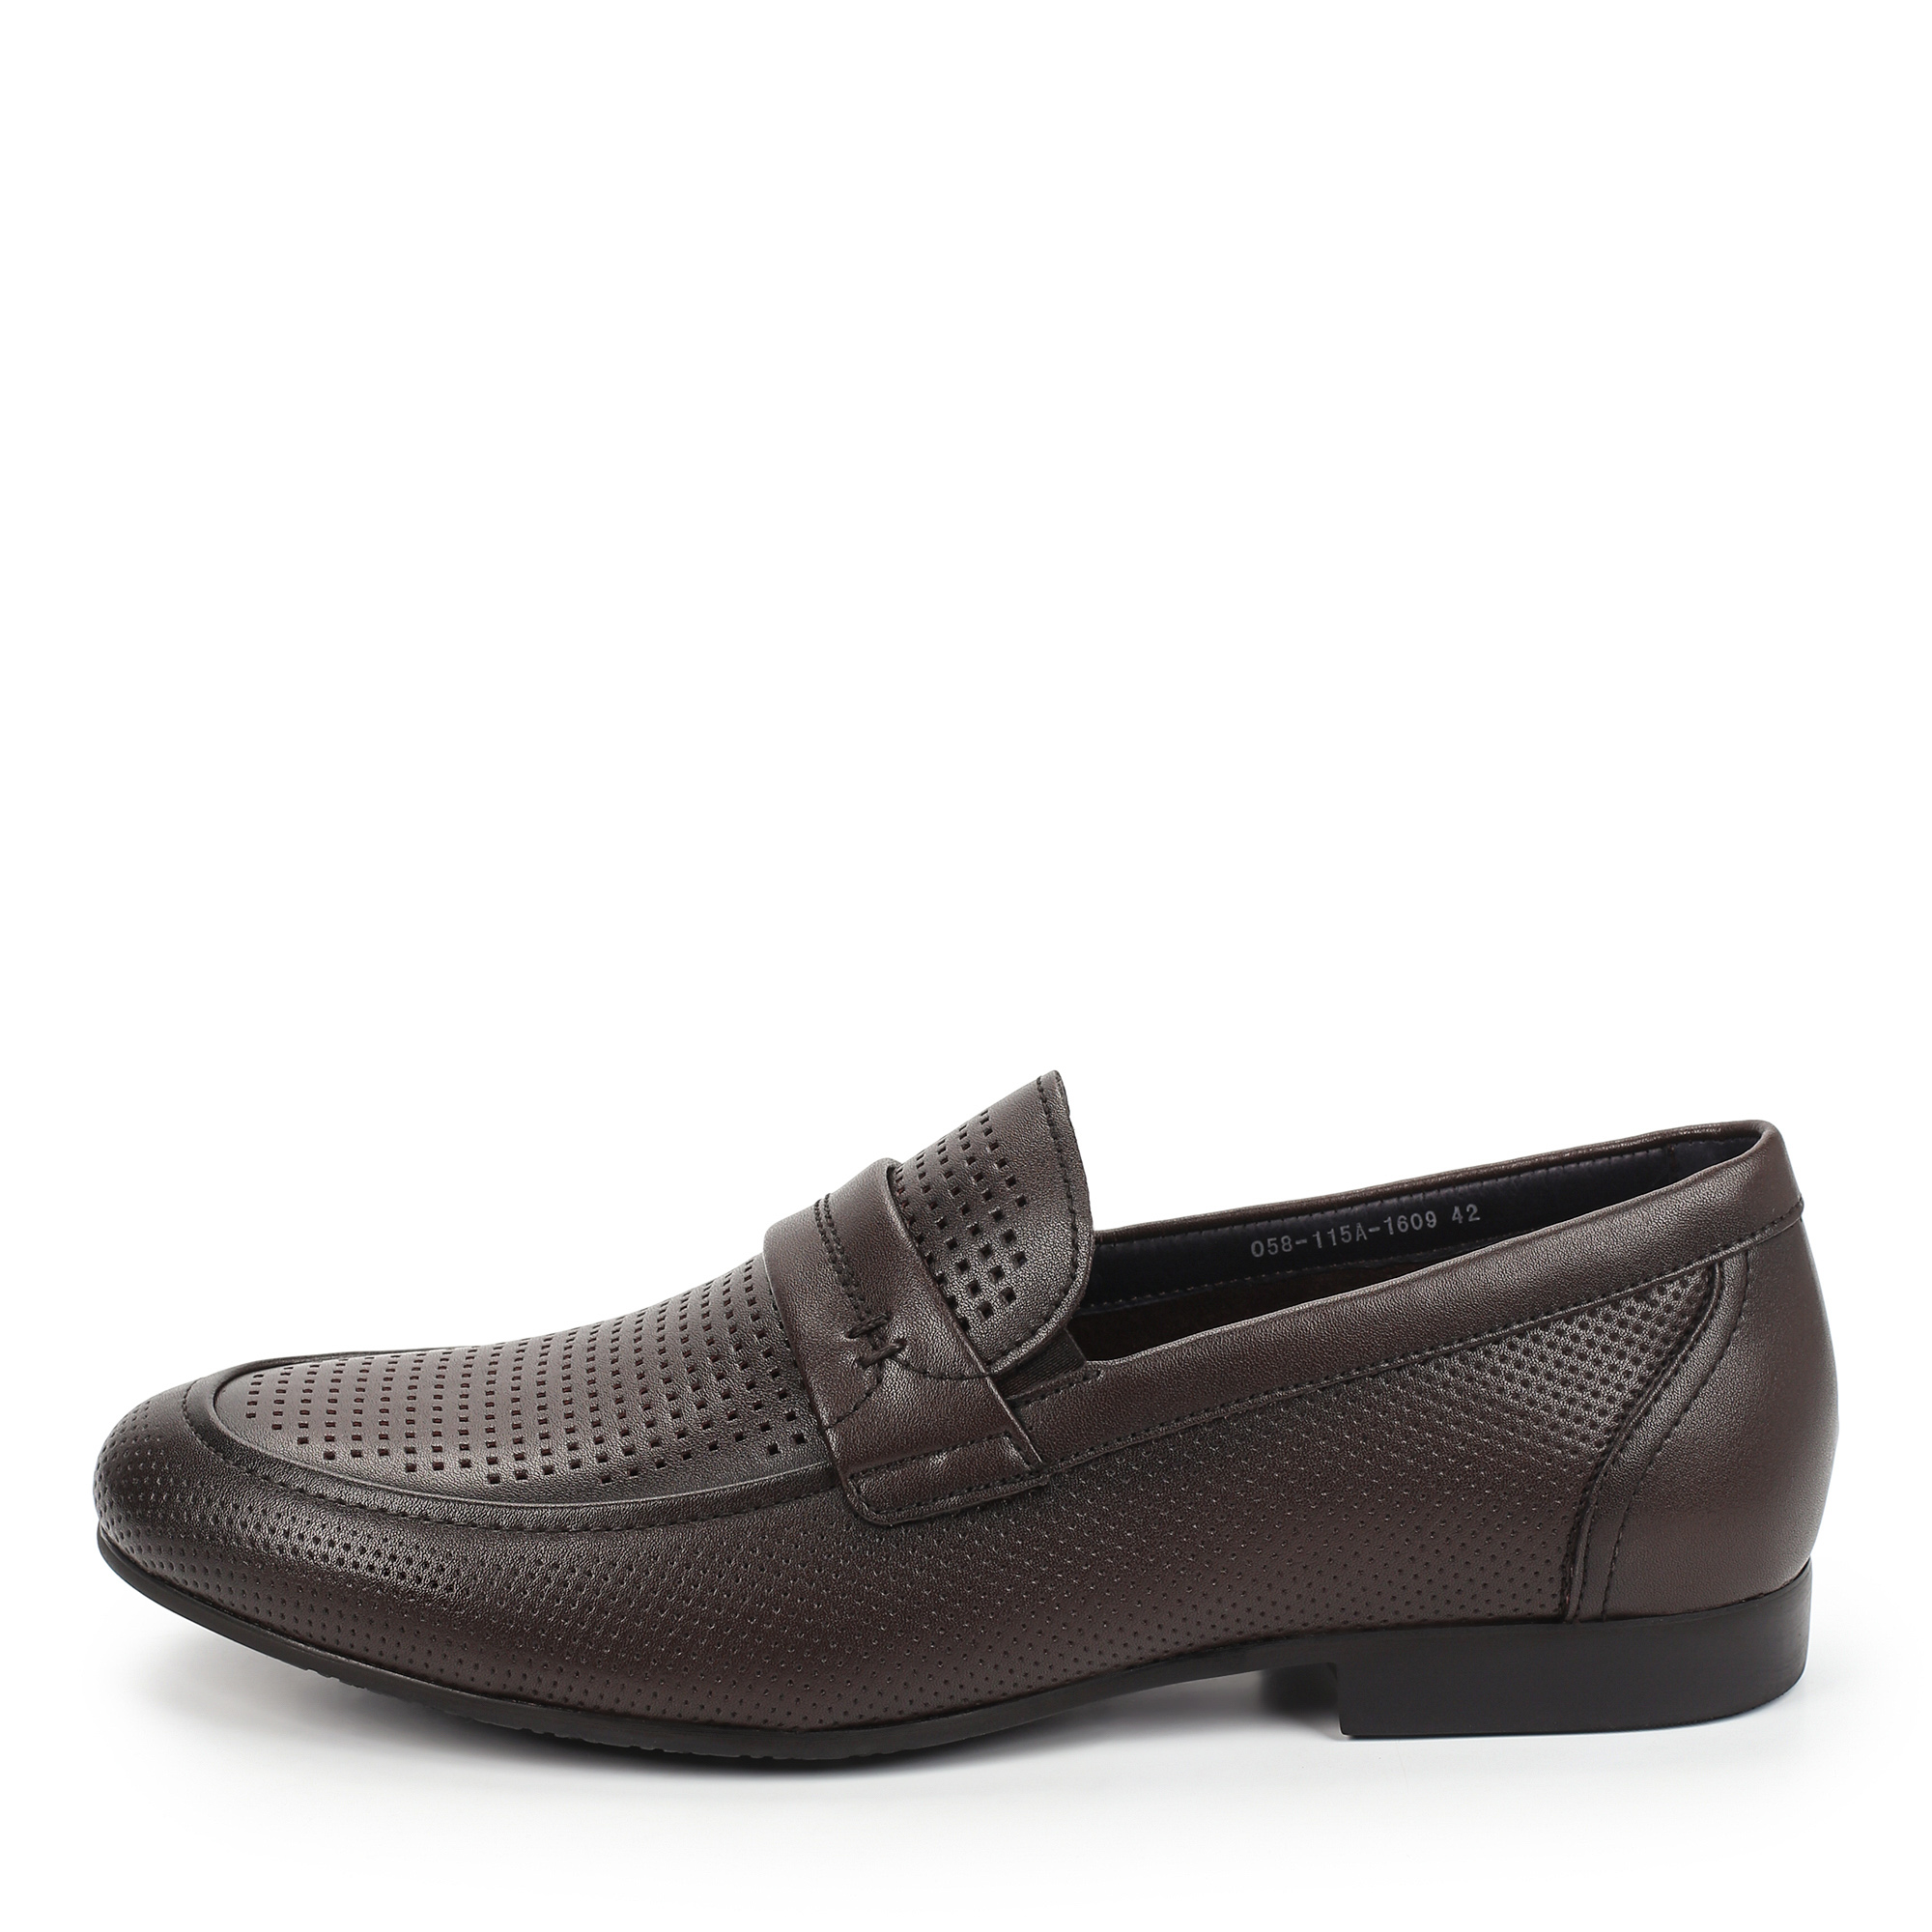 Туфли/полуботинки Thomas Munz 058-115A-1609, цвет темно-коричневый, размер 41 - фото 1